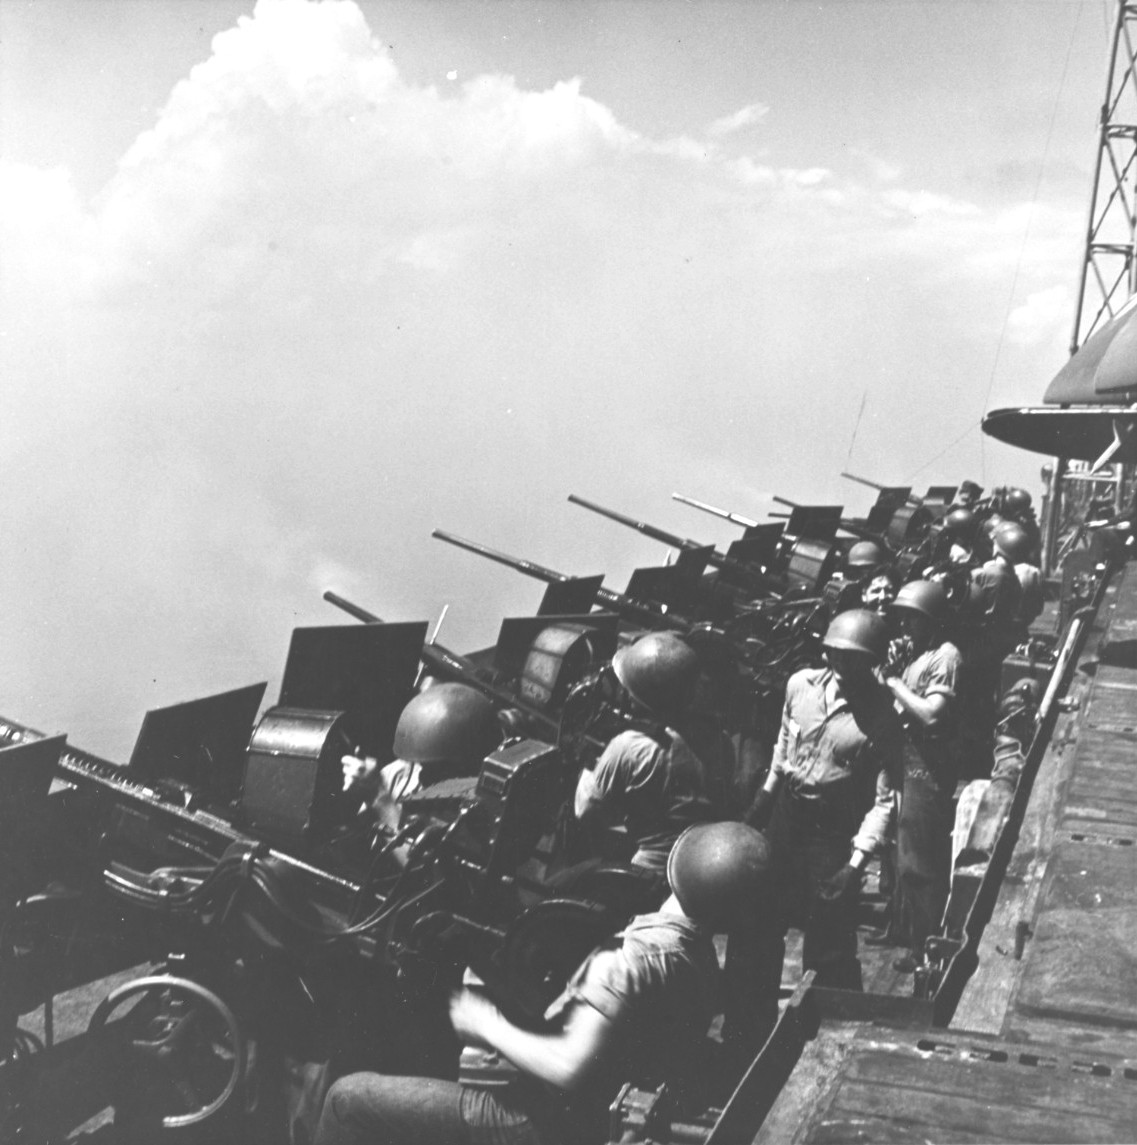 Oerlikon guns in the catwalk of USS Hornet, Feb 1945